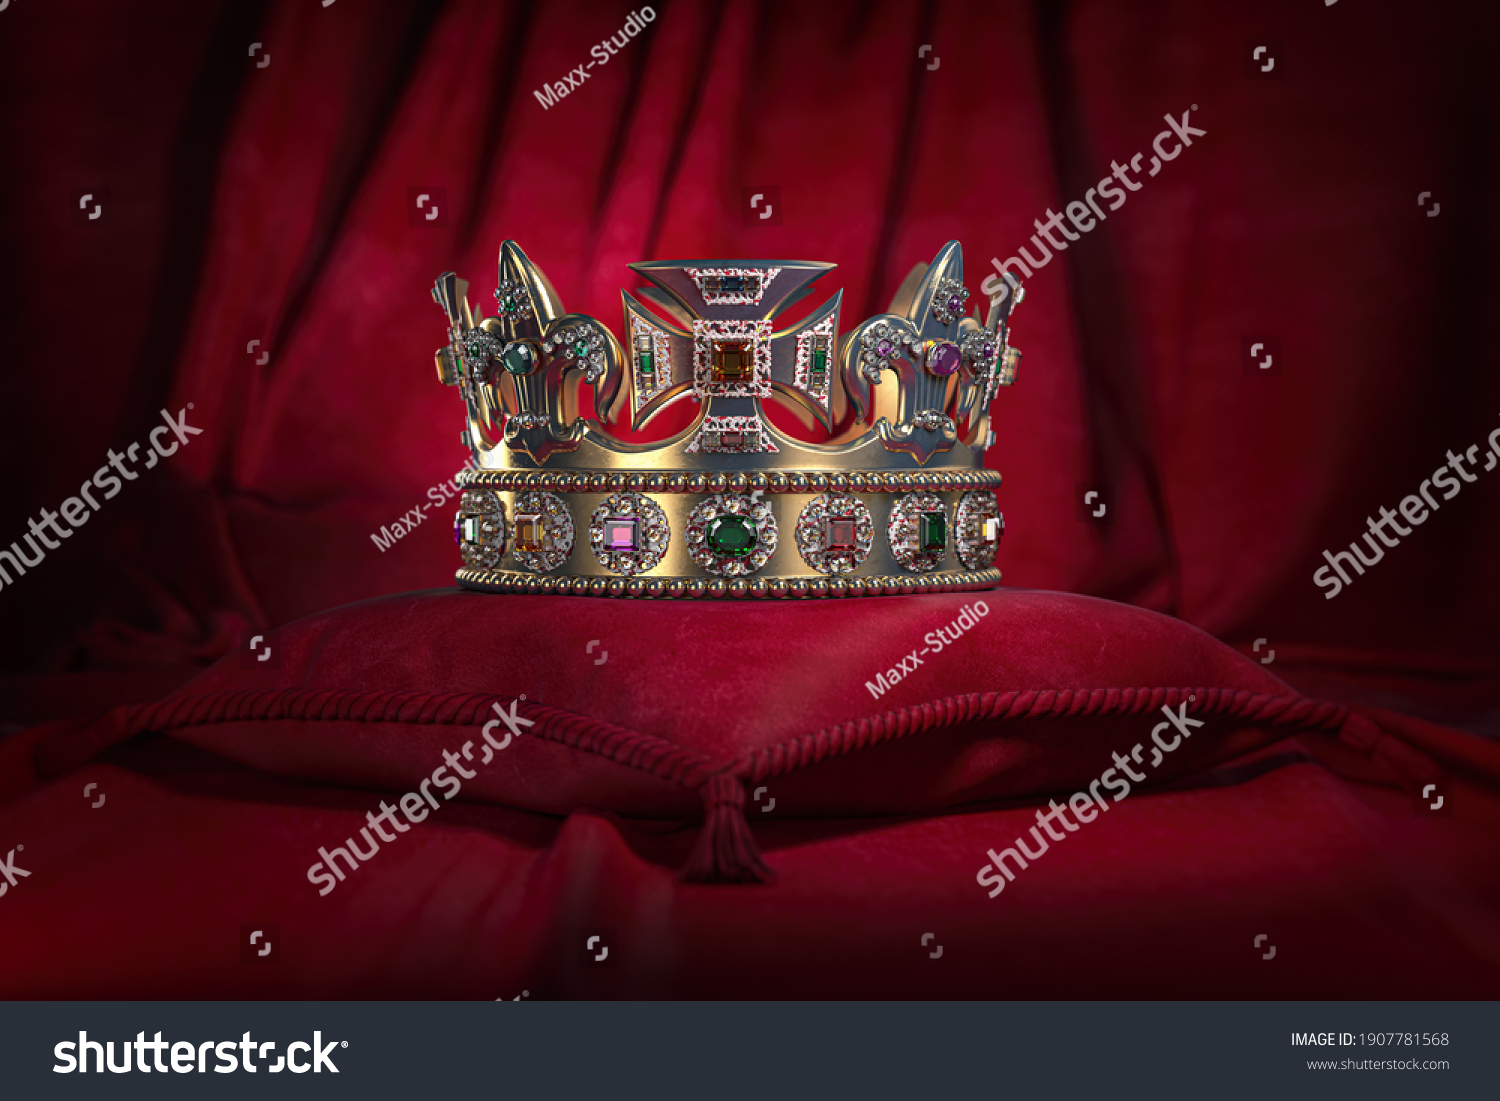 Golden Crown On Red Velvet Background Stock Illustration 1907781568 ...